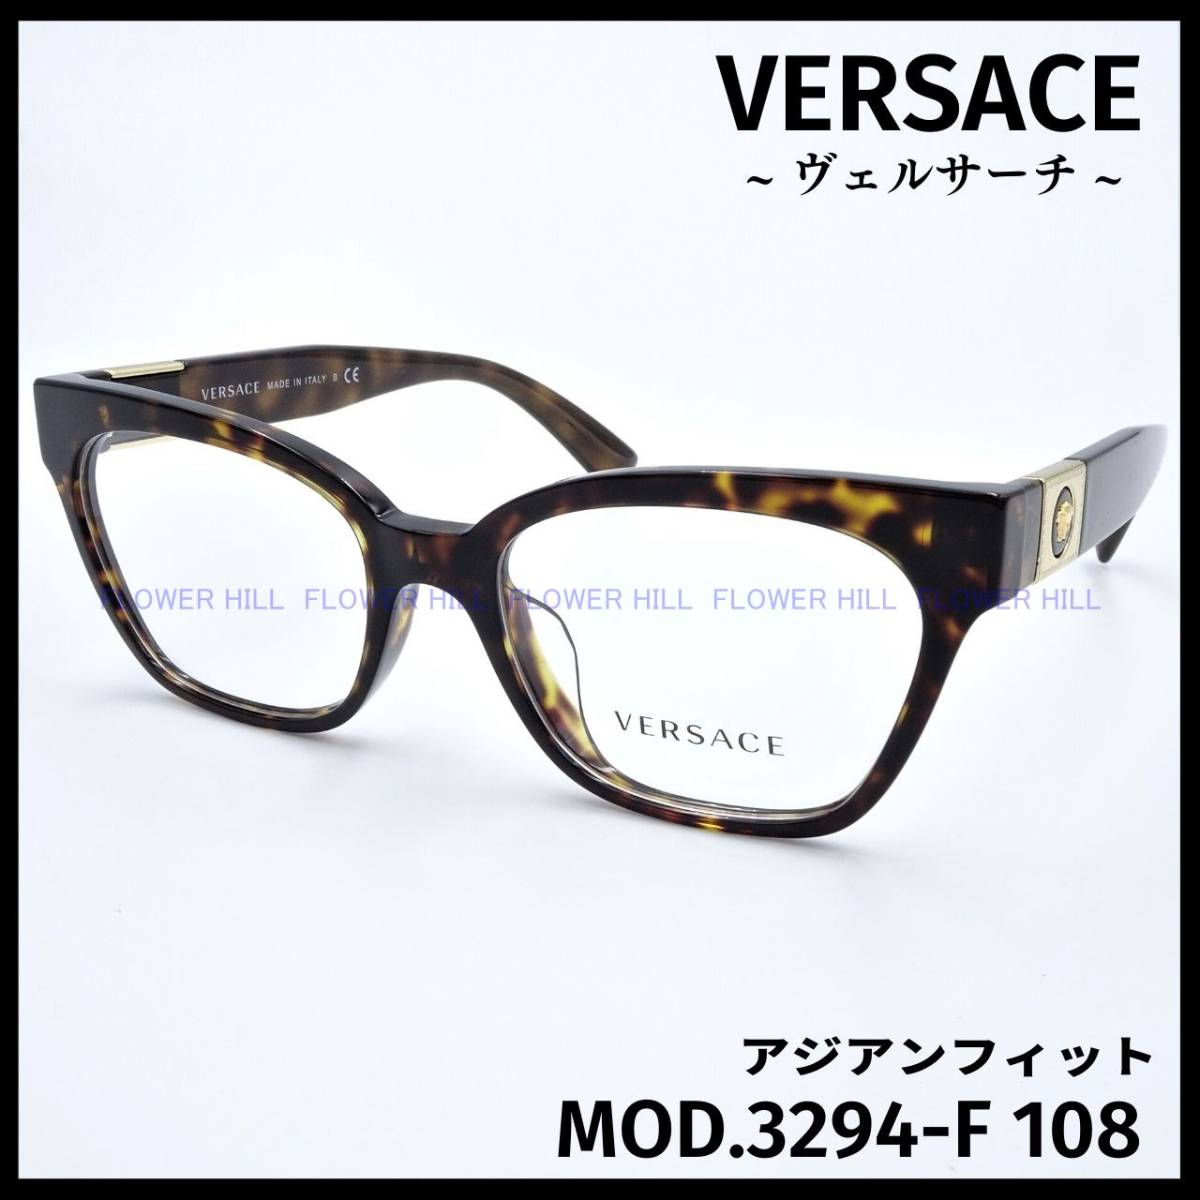 【新品・送料無料】 ヴェルサーチ VERSACE MOD.3294-F 108 メガネ フレーム ハバナ アジアンフィット メンズ レディース